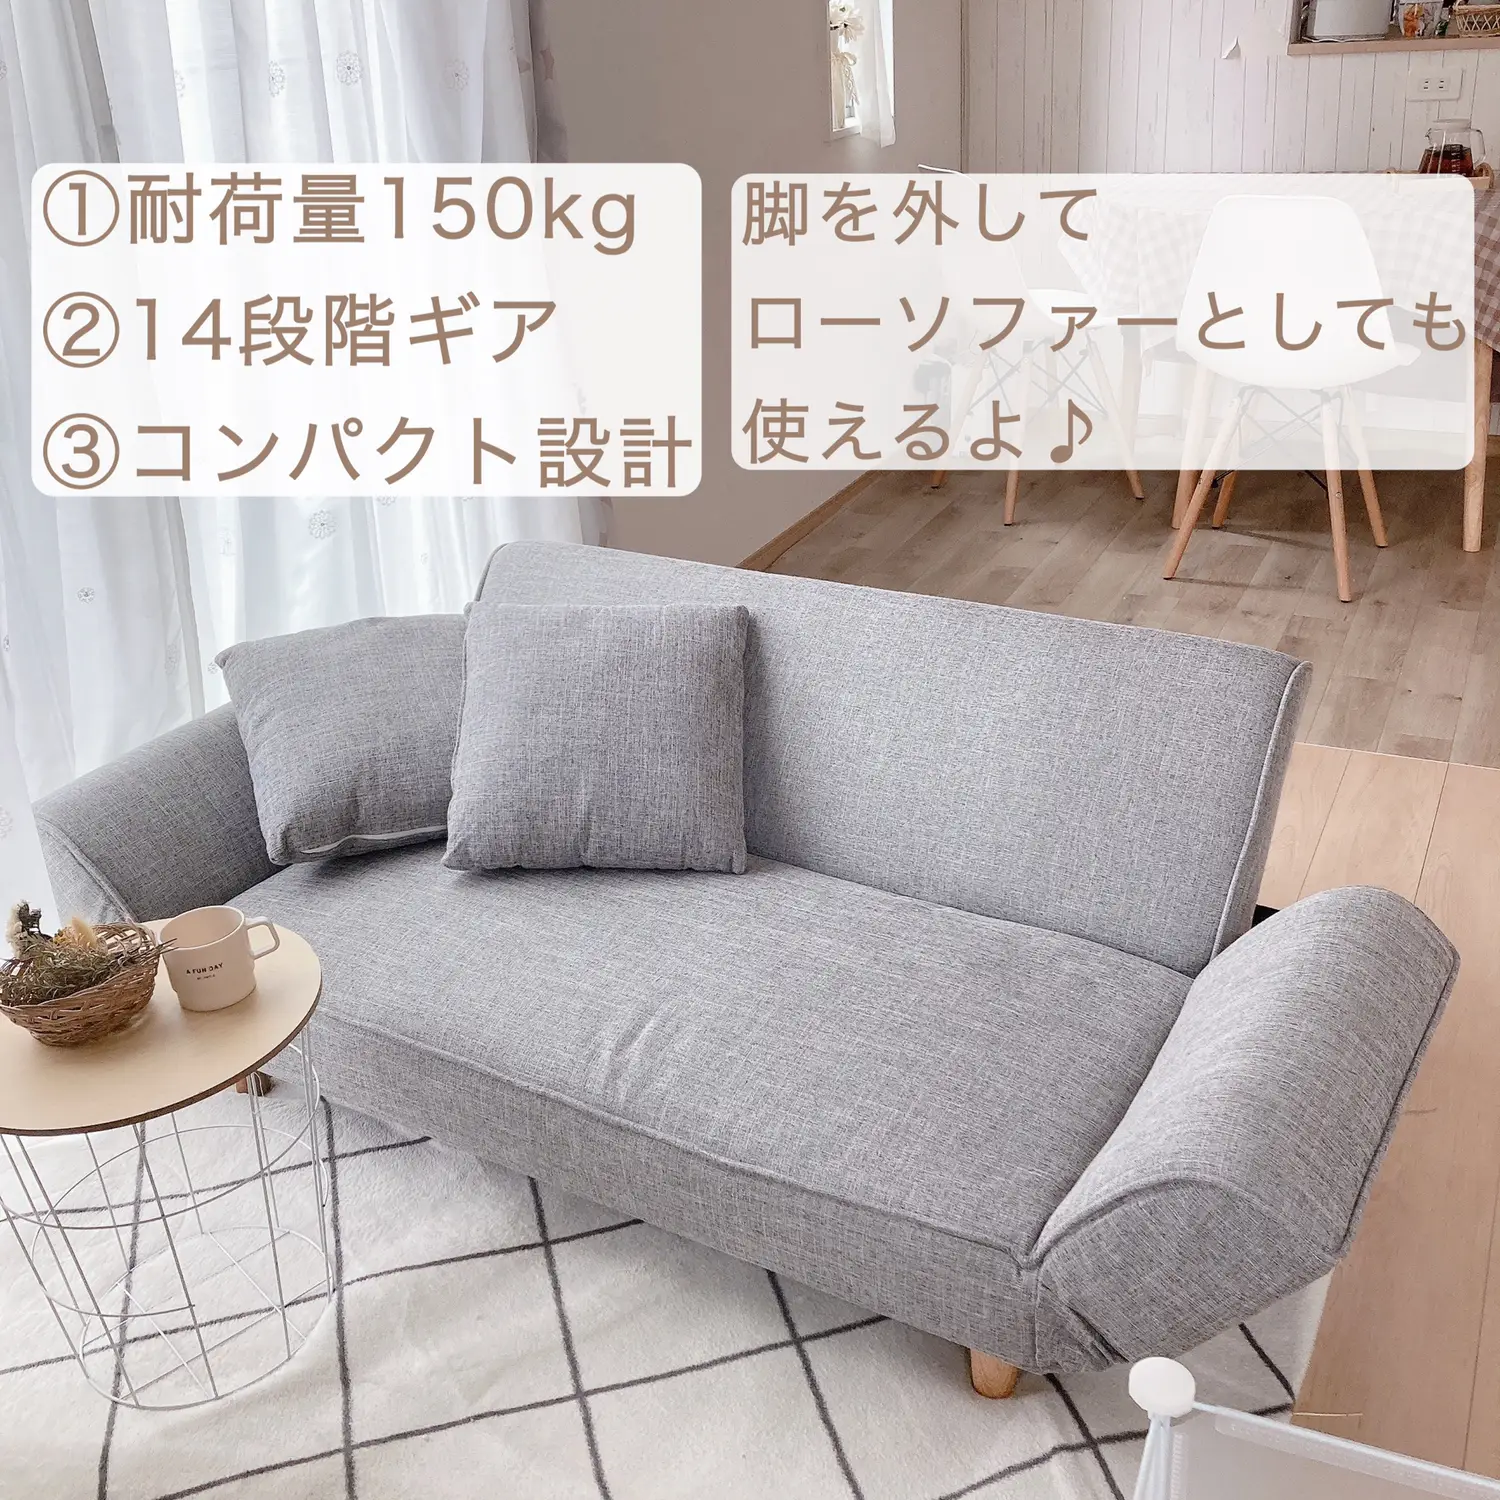 お値段以上！1万円台で買えるソファーベッドの画像 (2枚目)